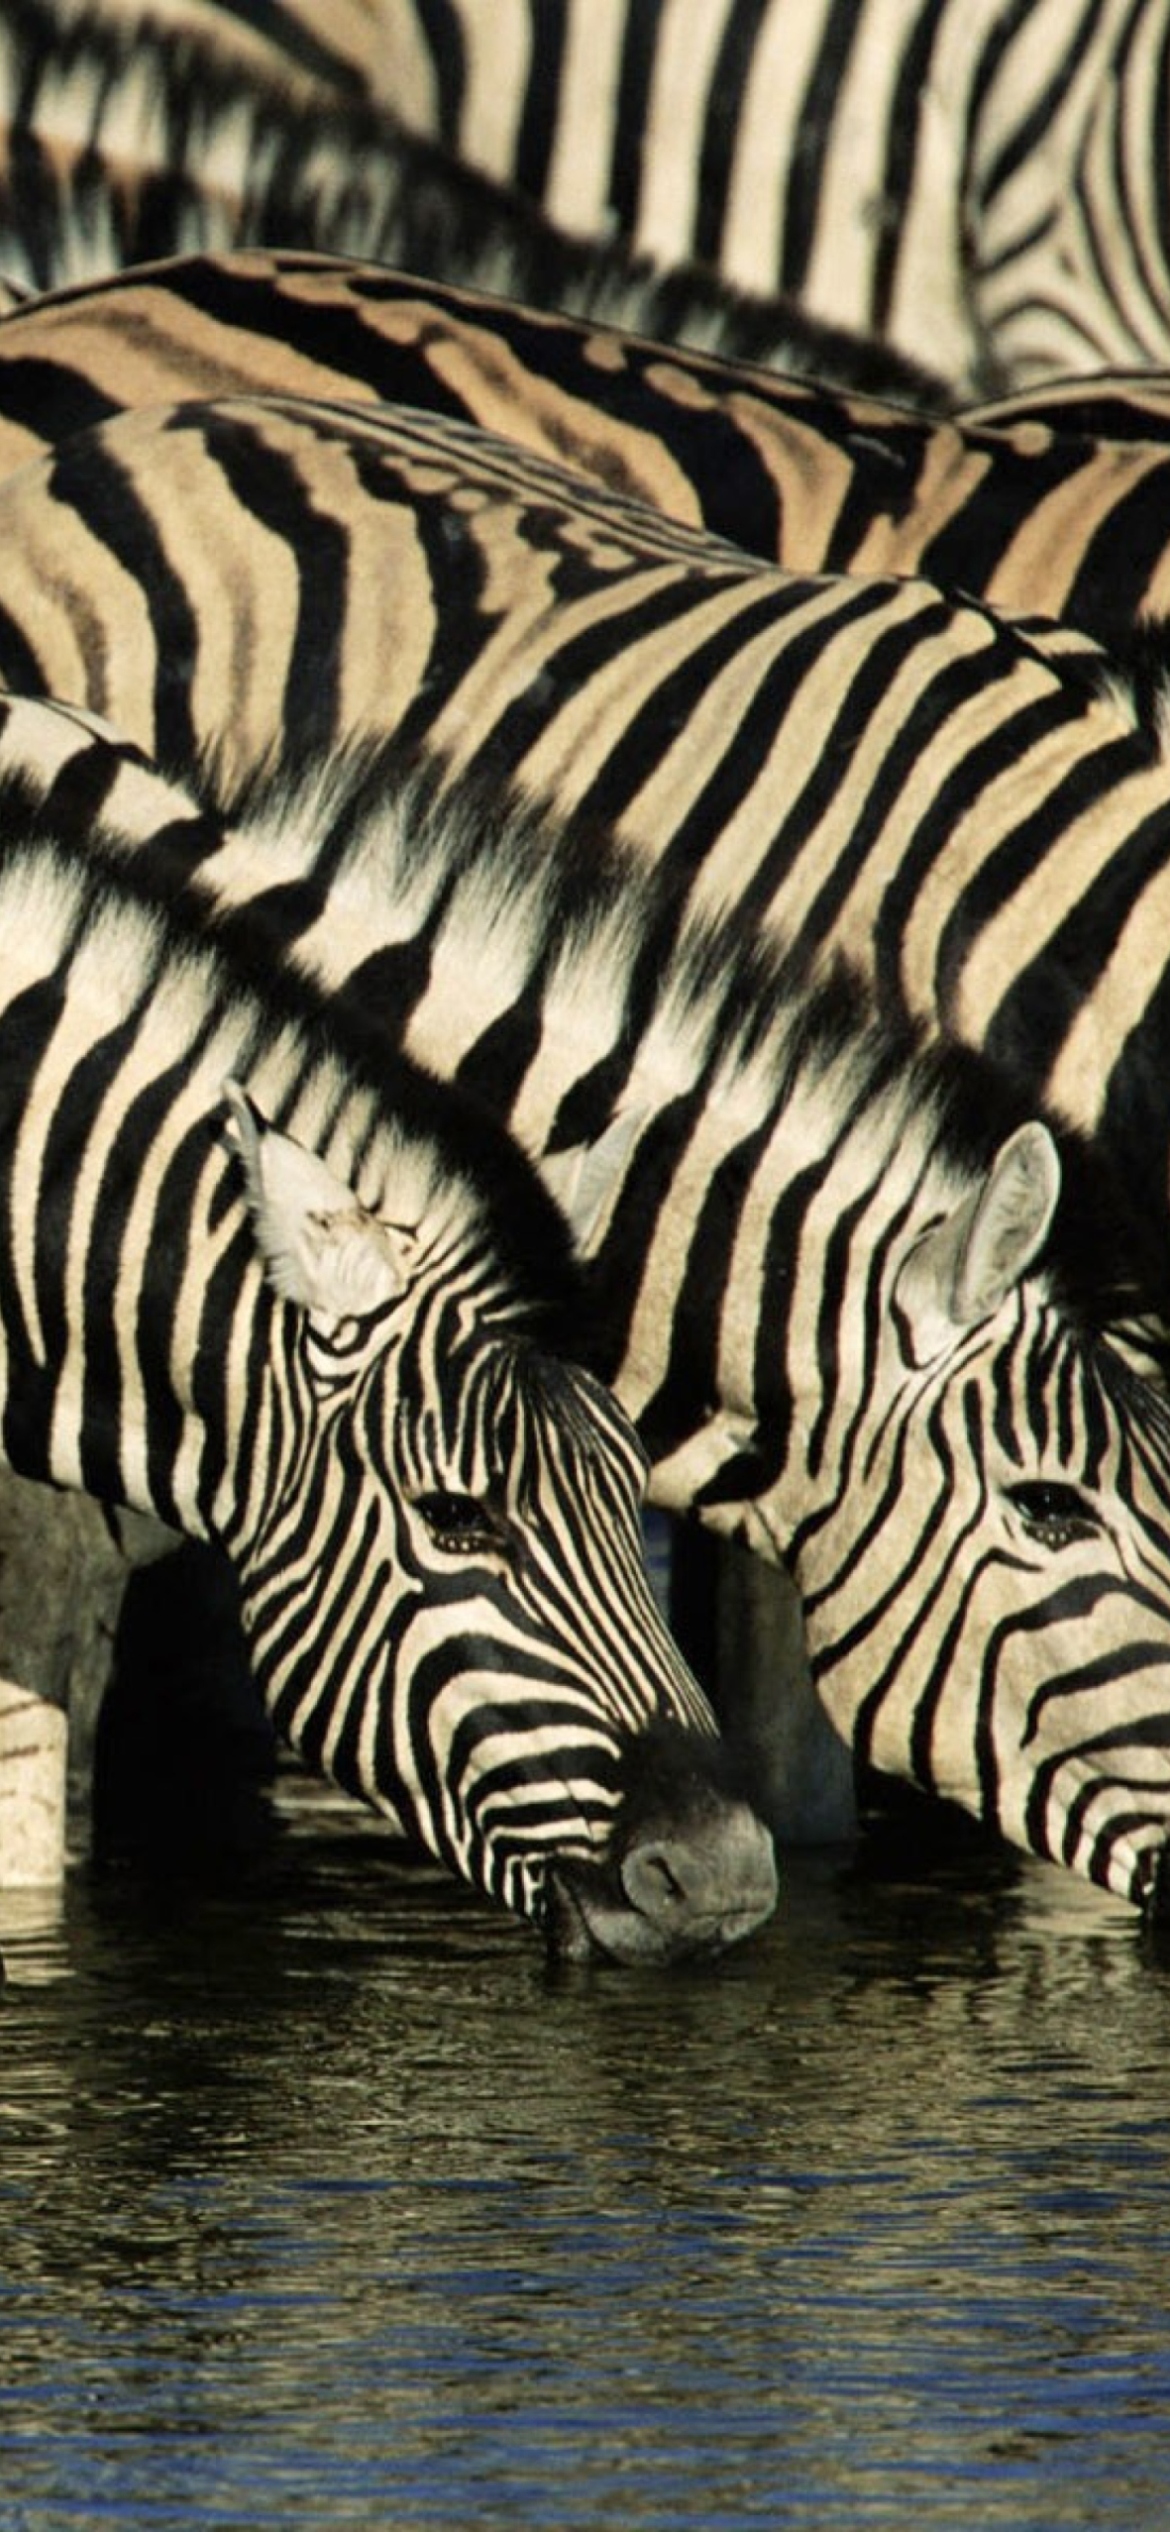 Sfondi Zebras Drinking Water 1170x2532